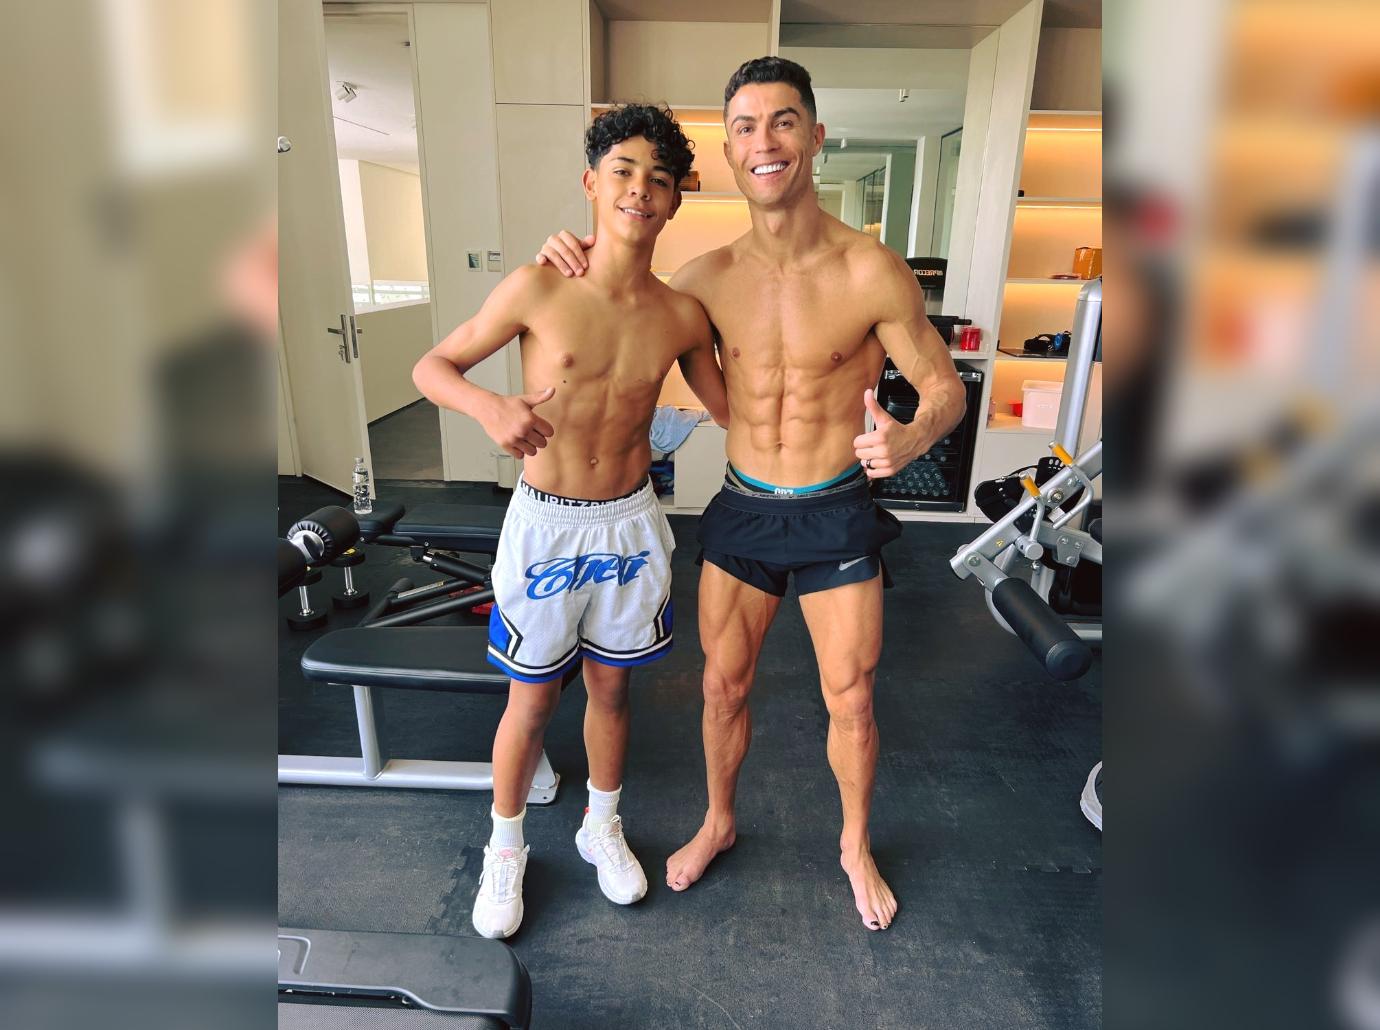 Cristiano Ronaldo & Son Cristiano Jr. Go Shirtless For Workout: Photo